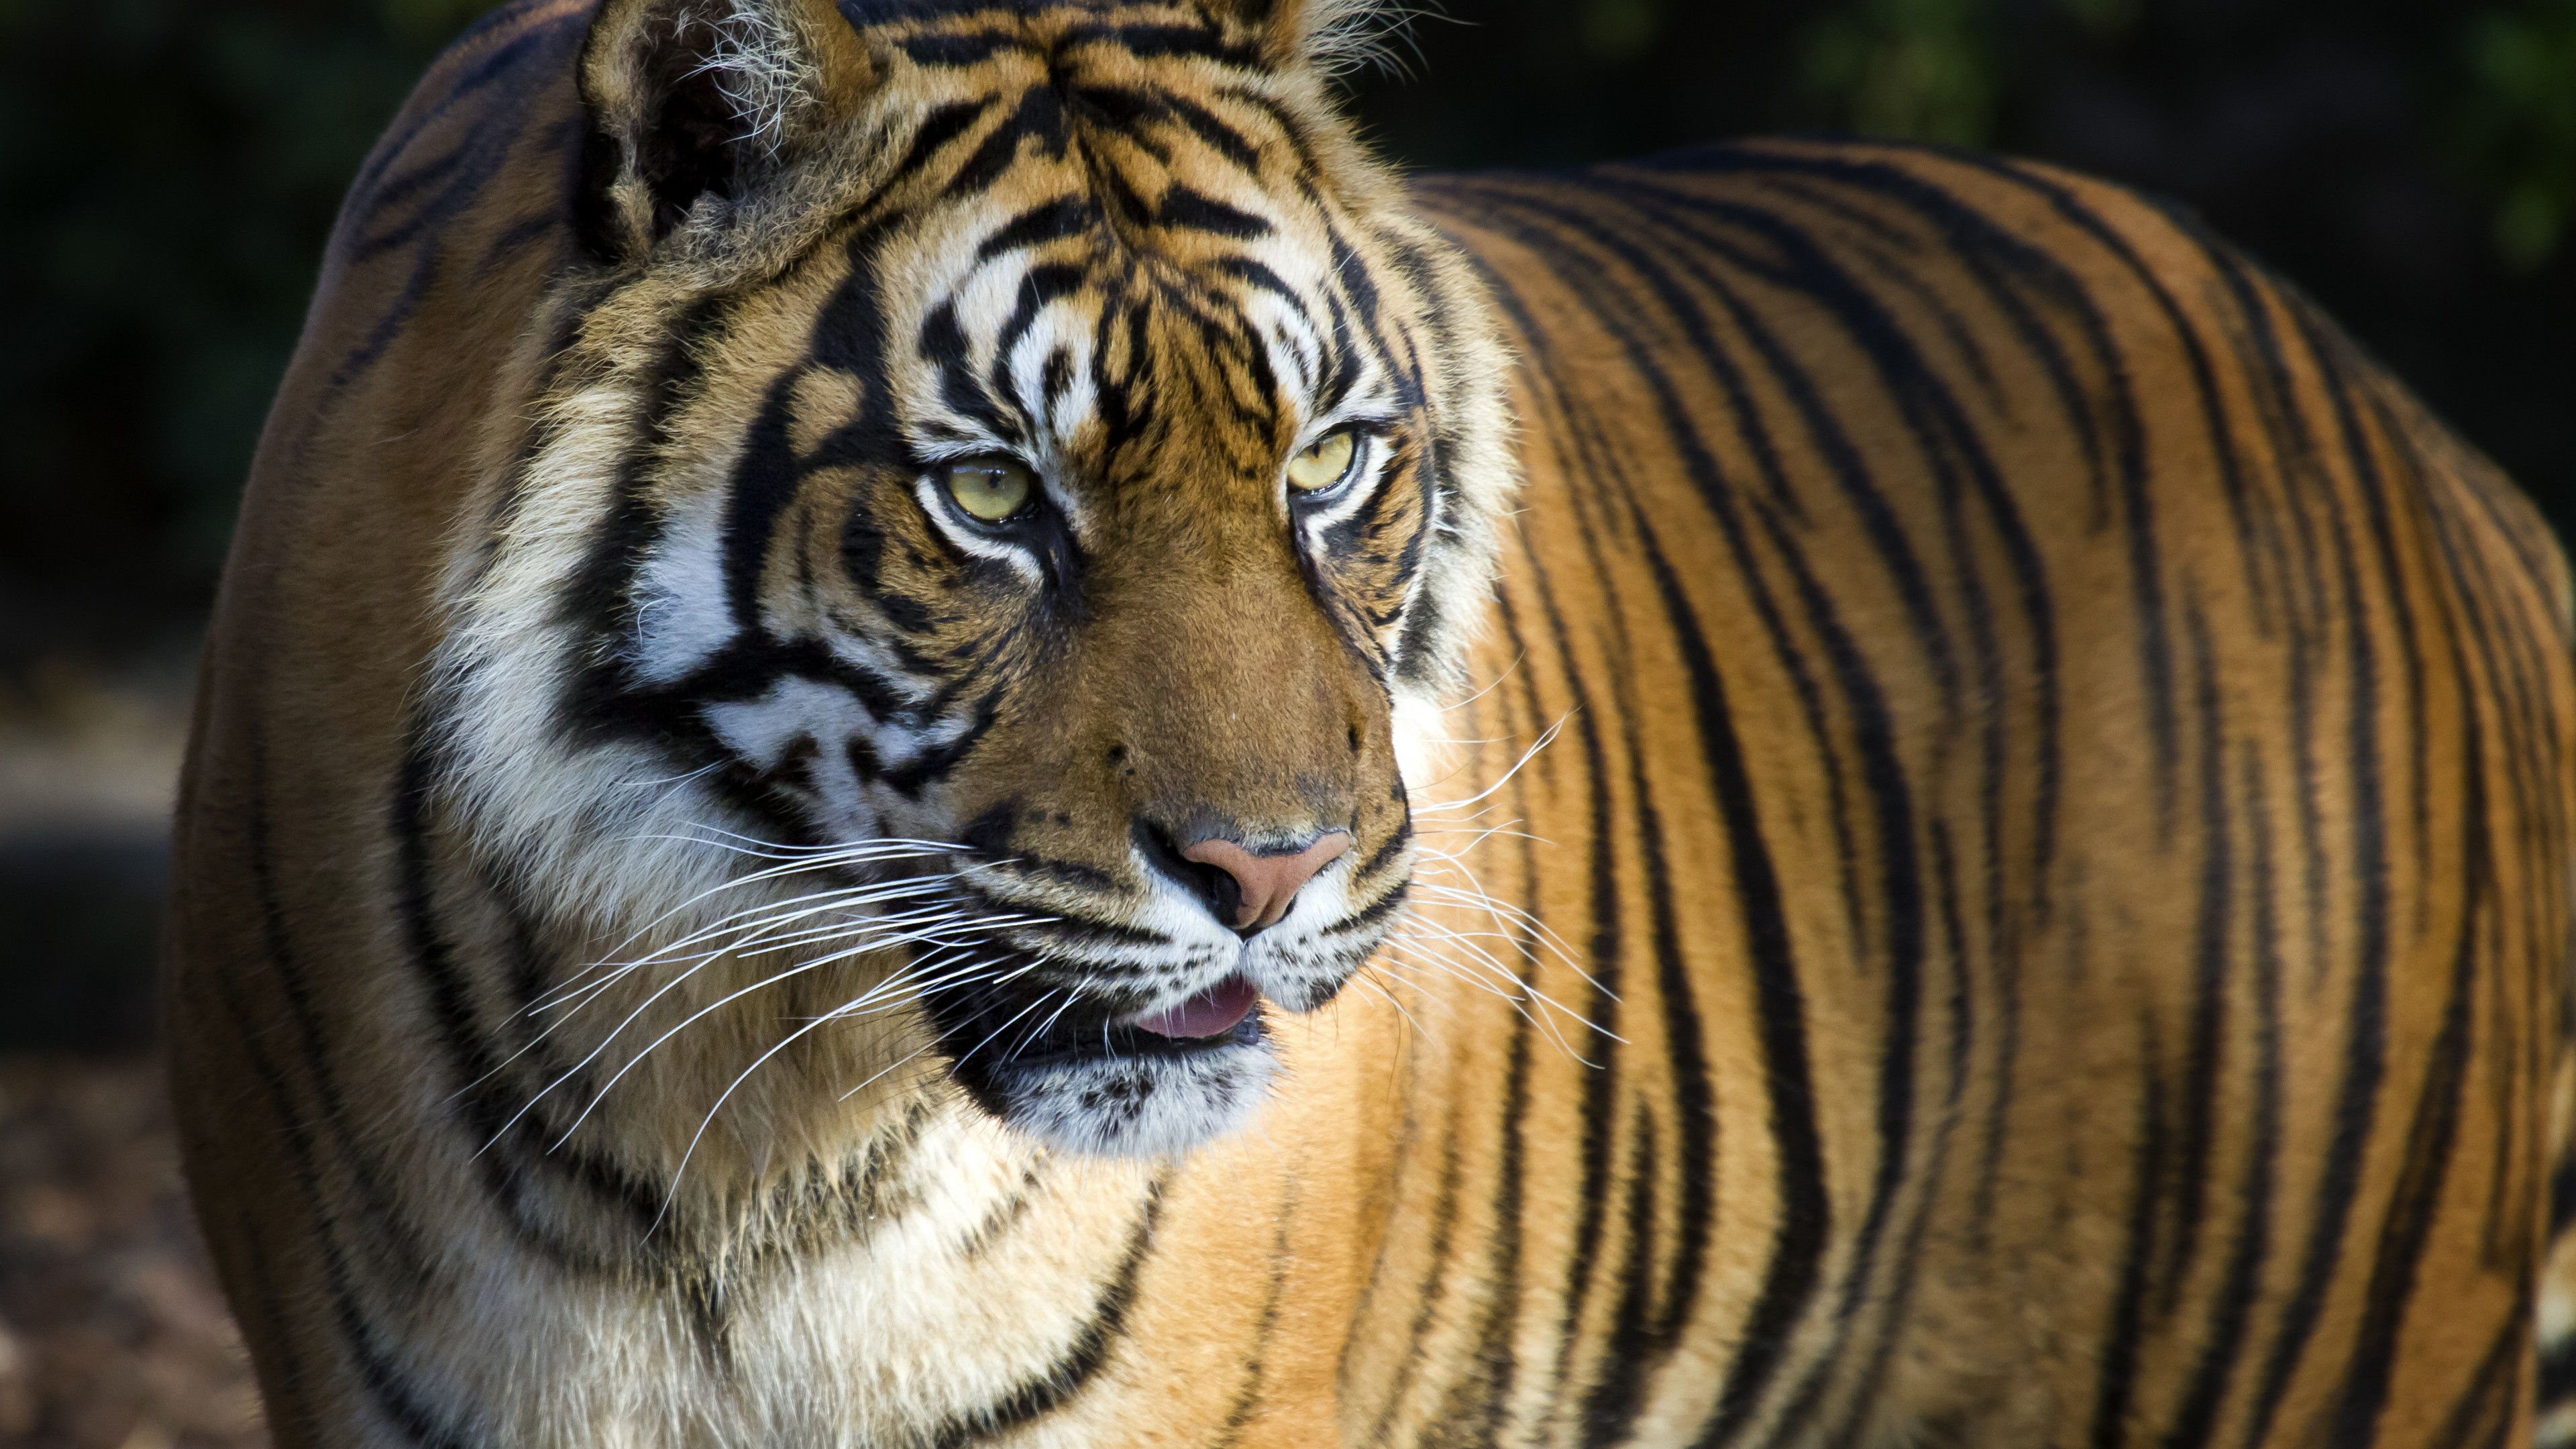 tiger tapete,tiger,tierwelt,landtier,bengalischer tiger,sibirischer tiger